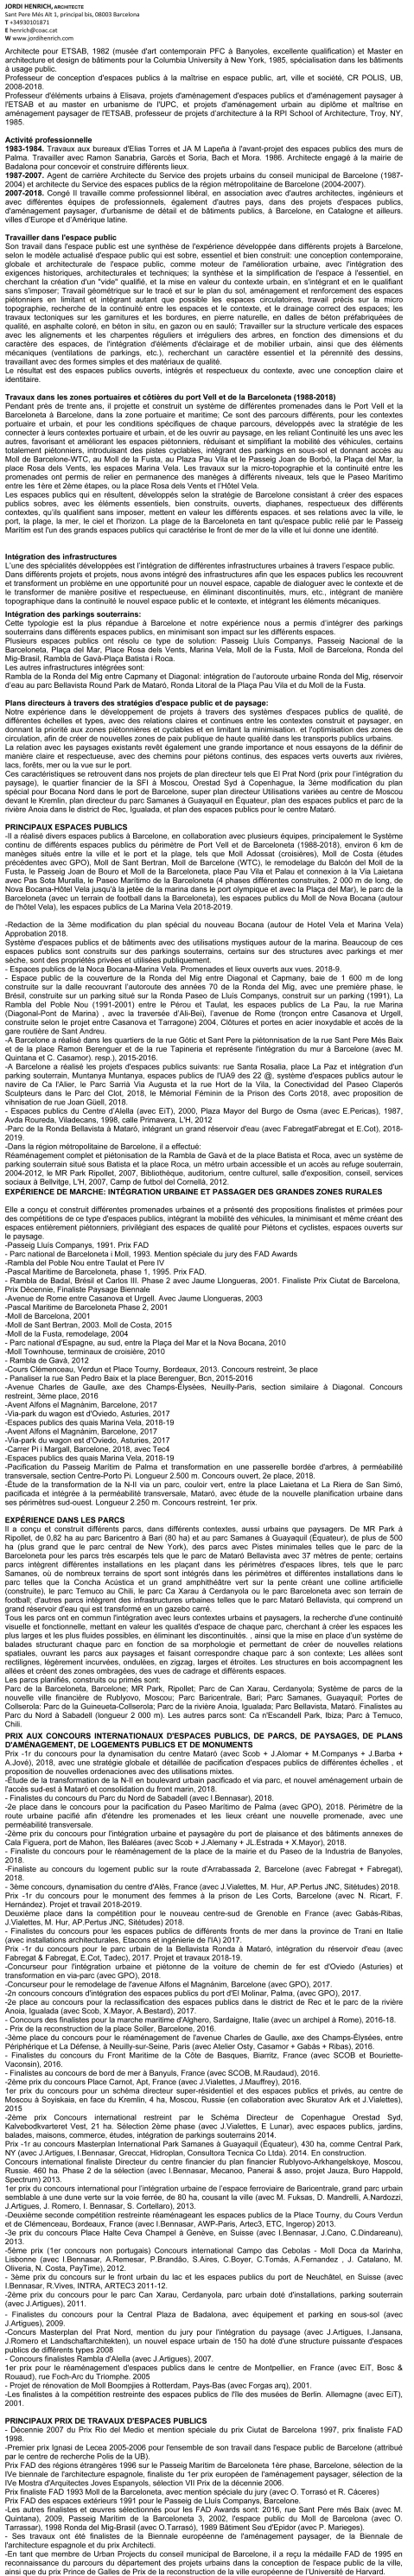 Microsoft Word - JORDI HENRICH ARCHITECTE CV FRANÇAIS 20150212.